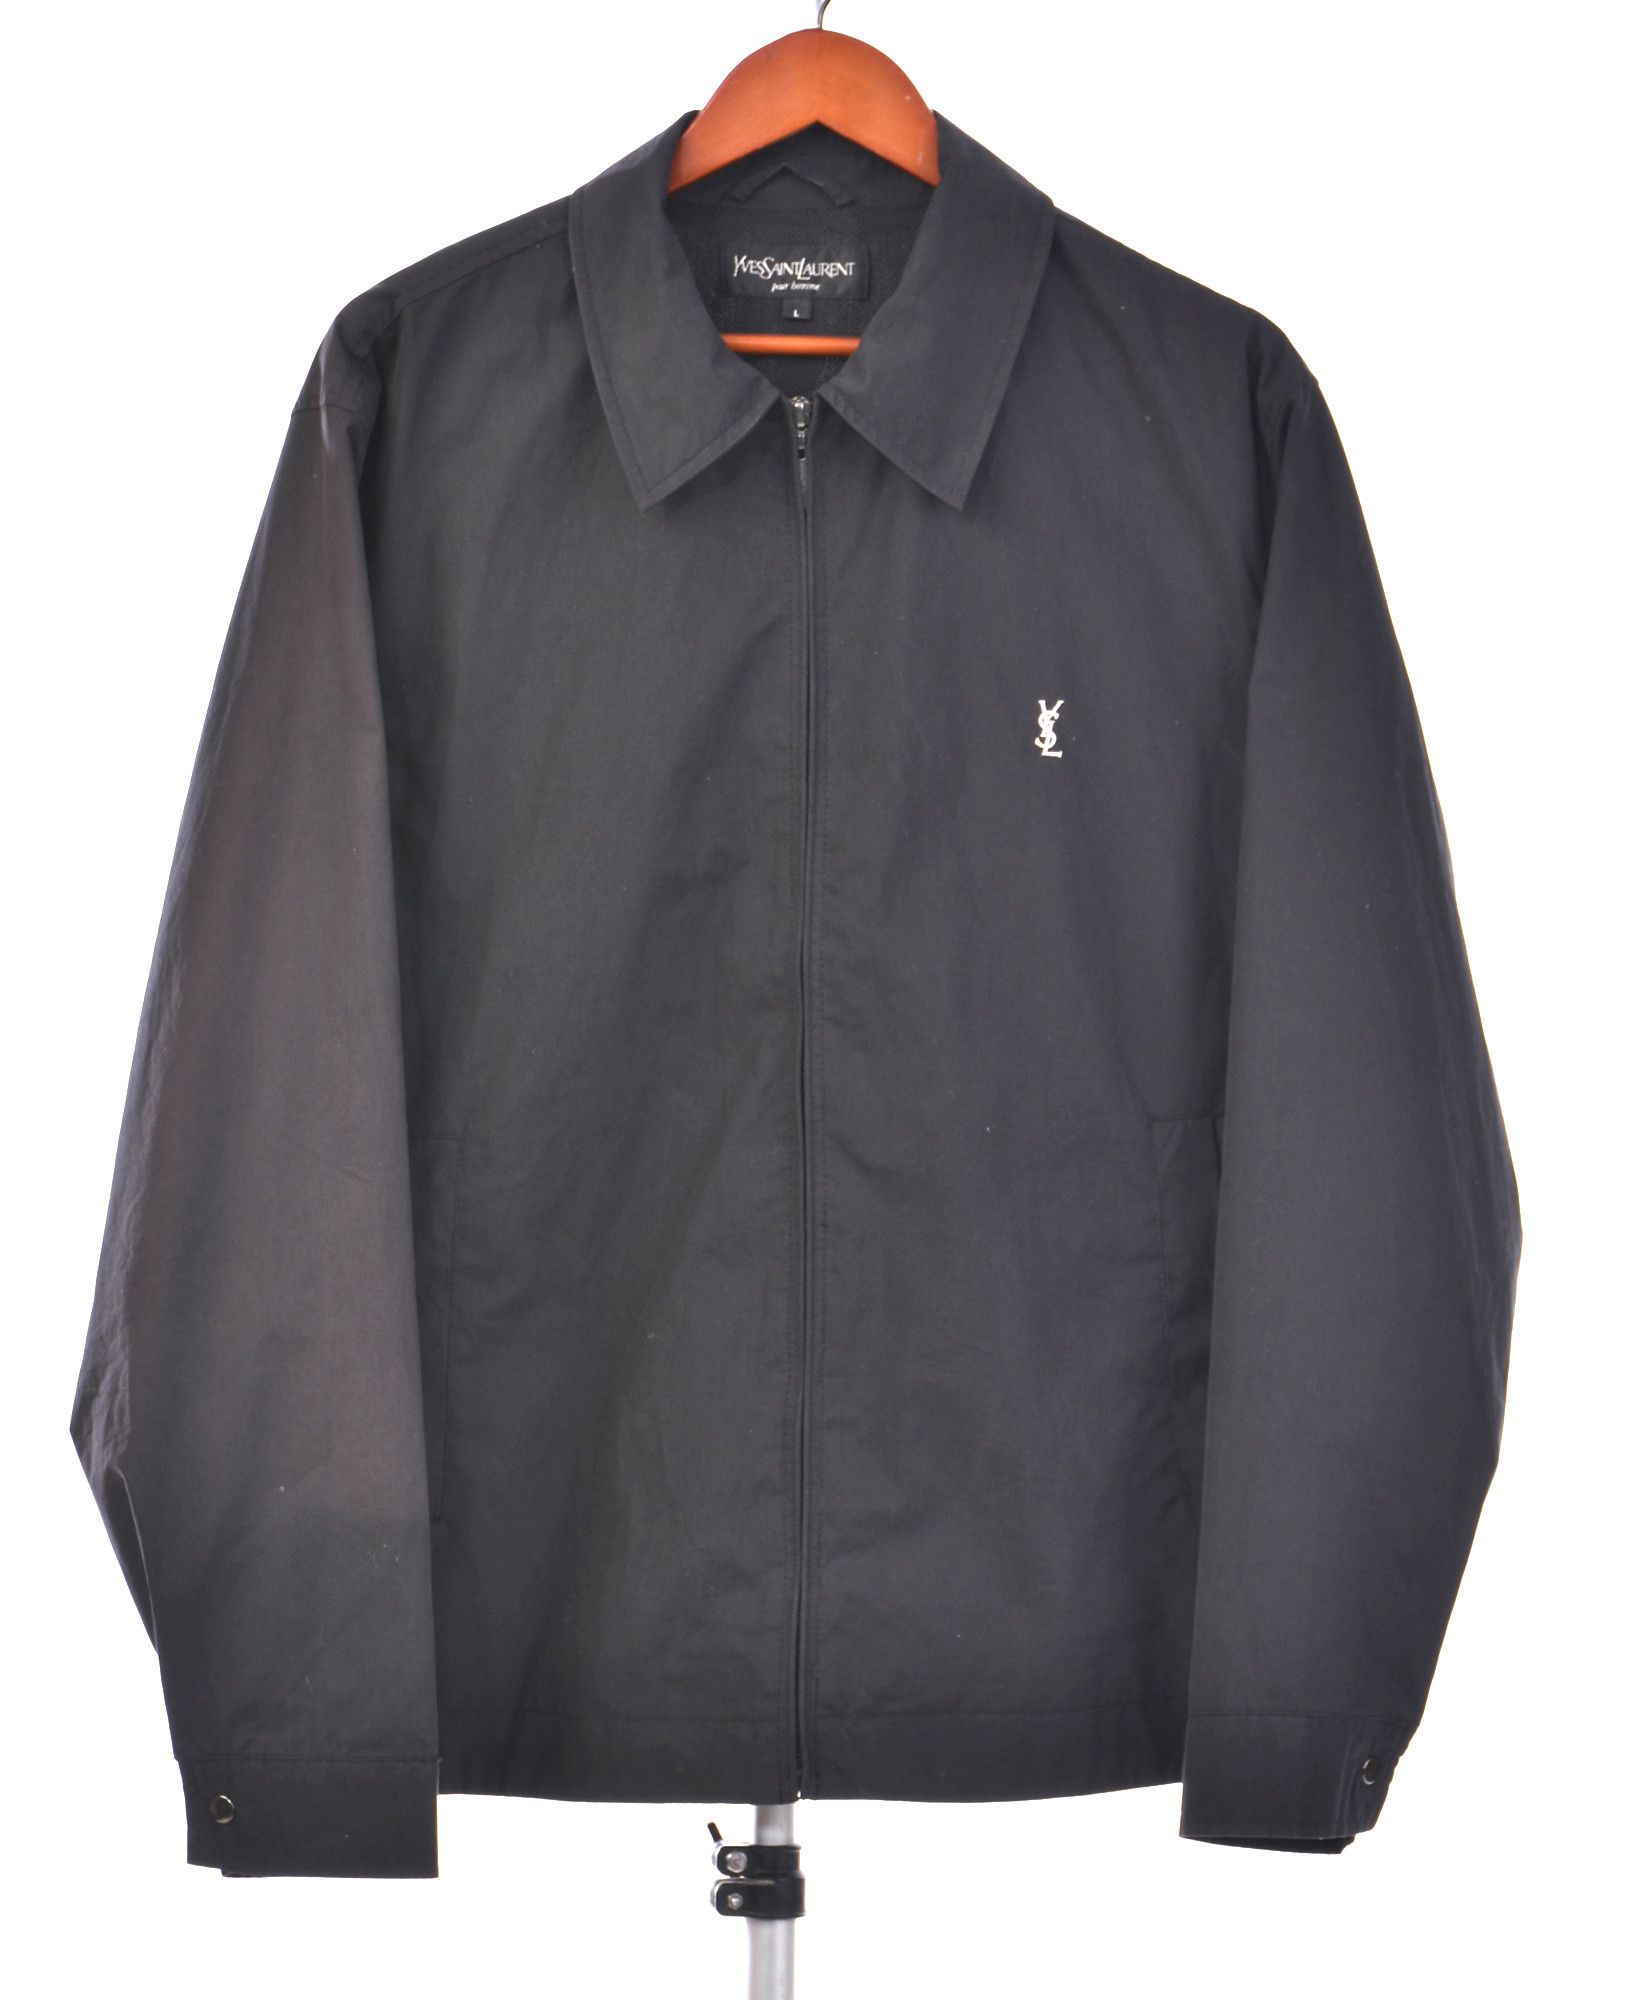 Yves Saint Laurent vintage black harrington jacket Size US L / EU 52-54 / 3 - 1 Preview